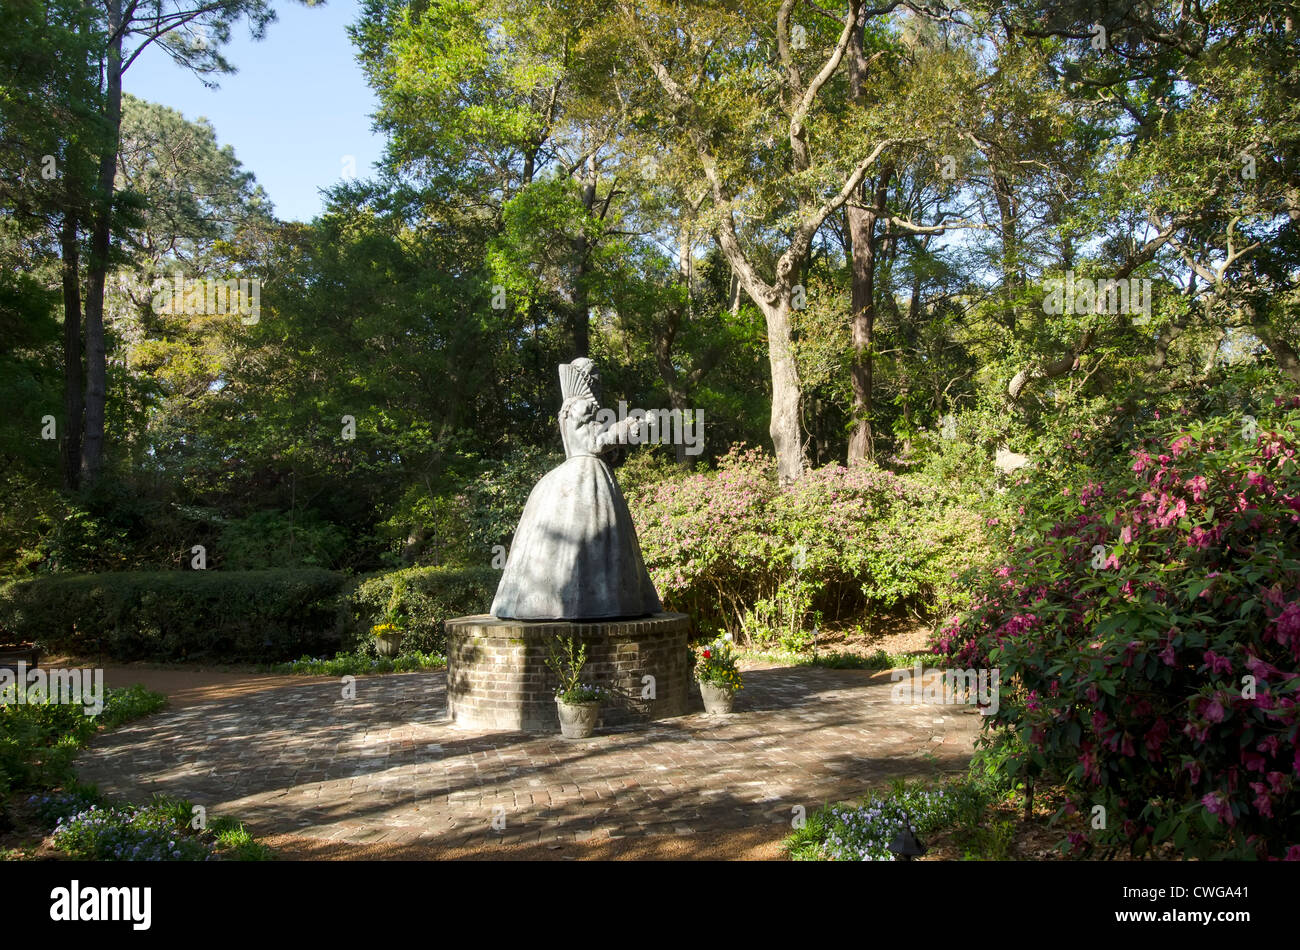 Statue Of Queen Elizabeth I At Elizabethan Gardens Manteo North